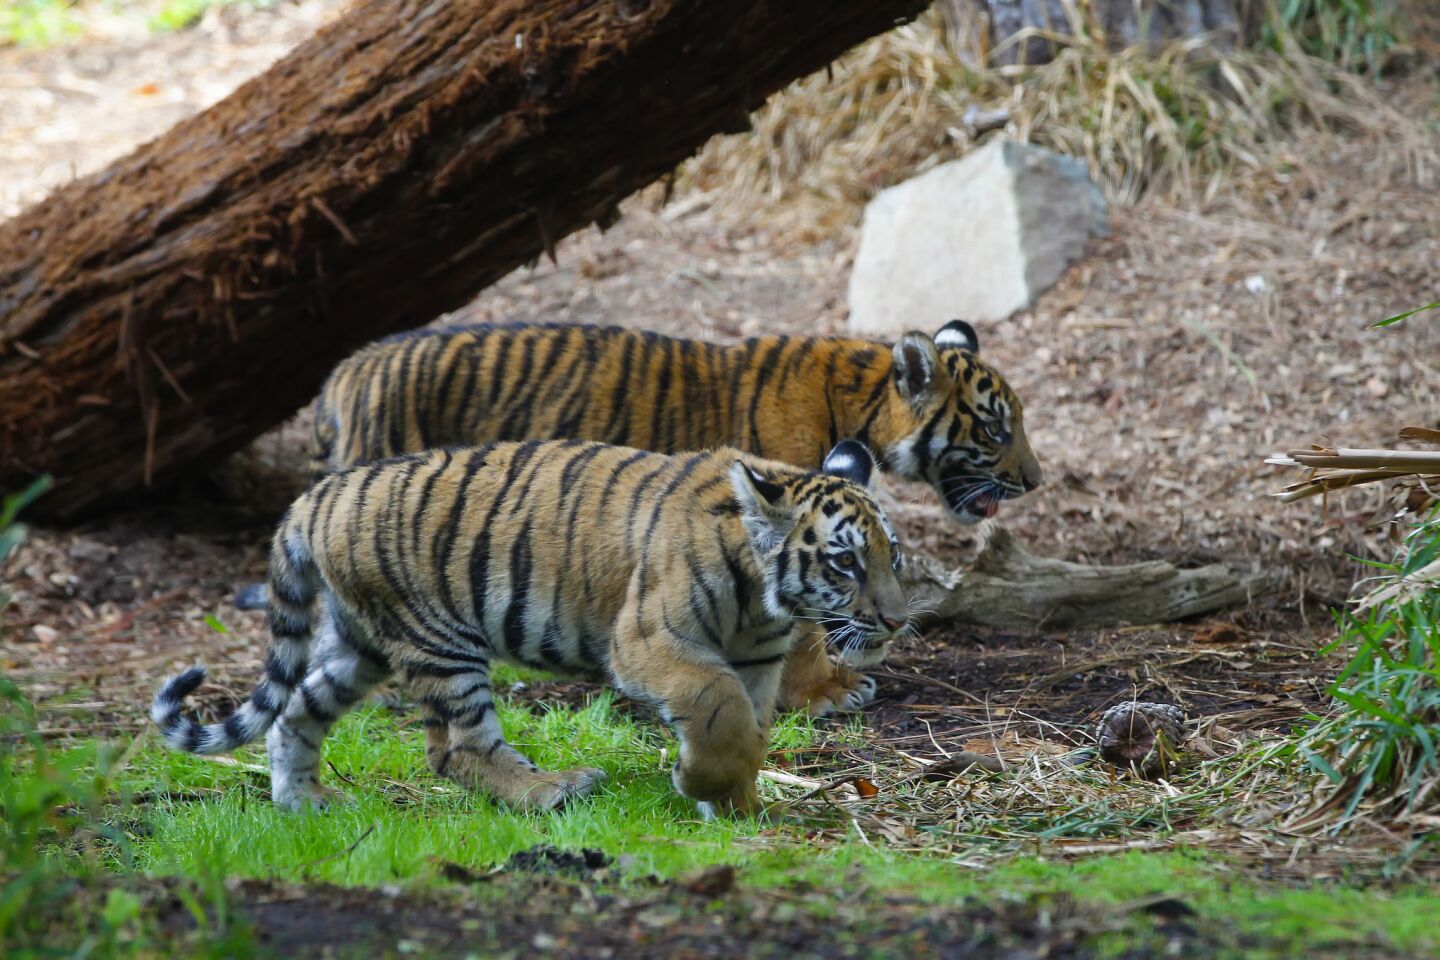 A rescued Bengal tiger cub and his companion, a Sumatran tiger cub